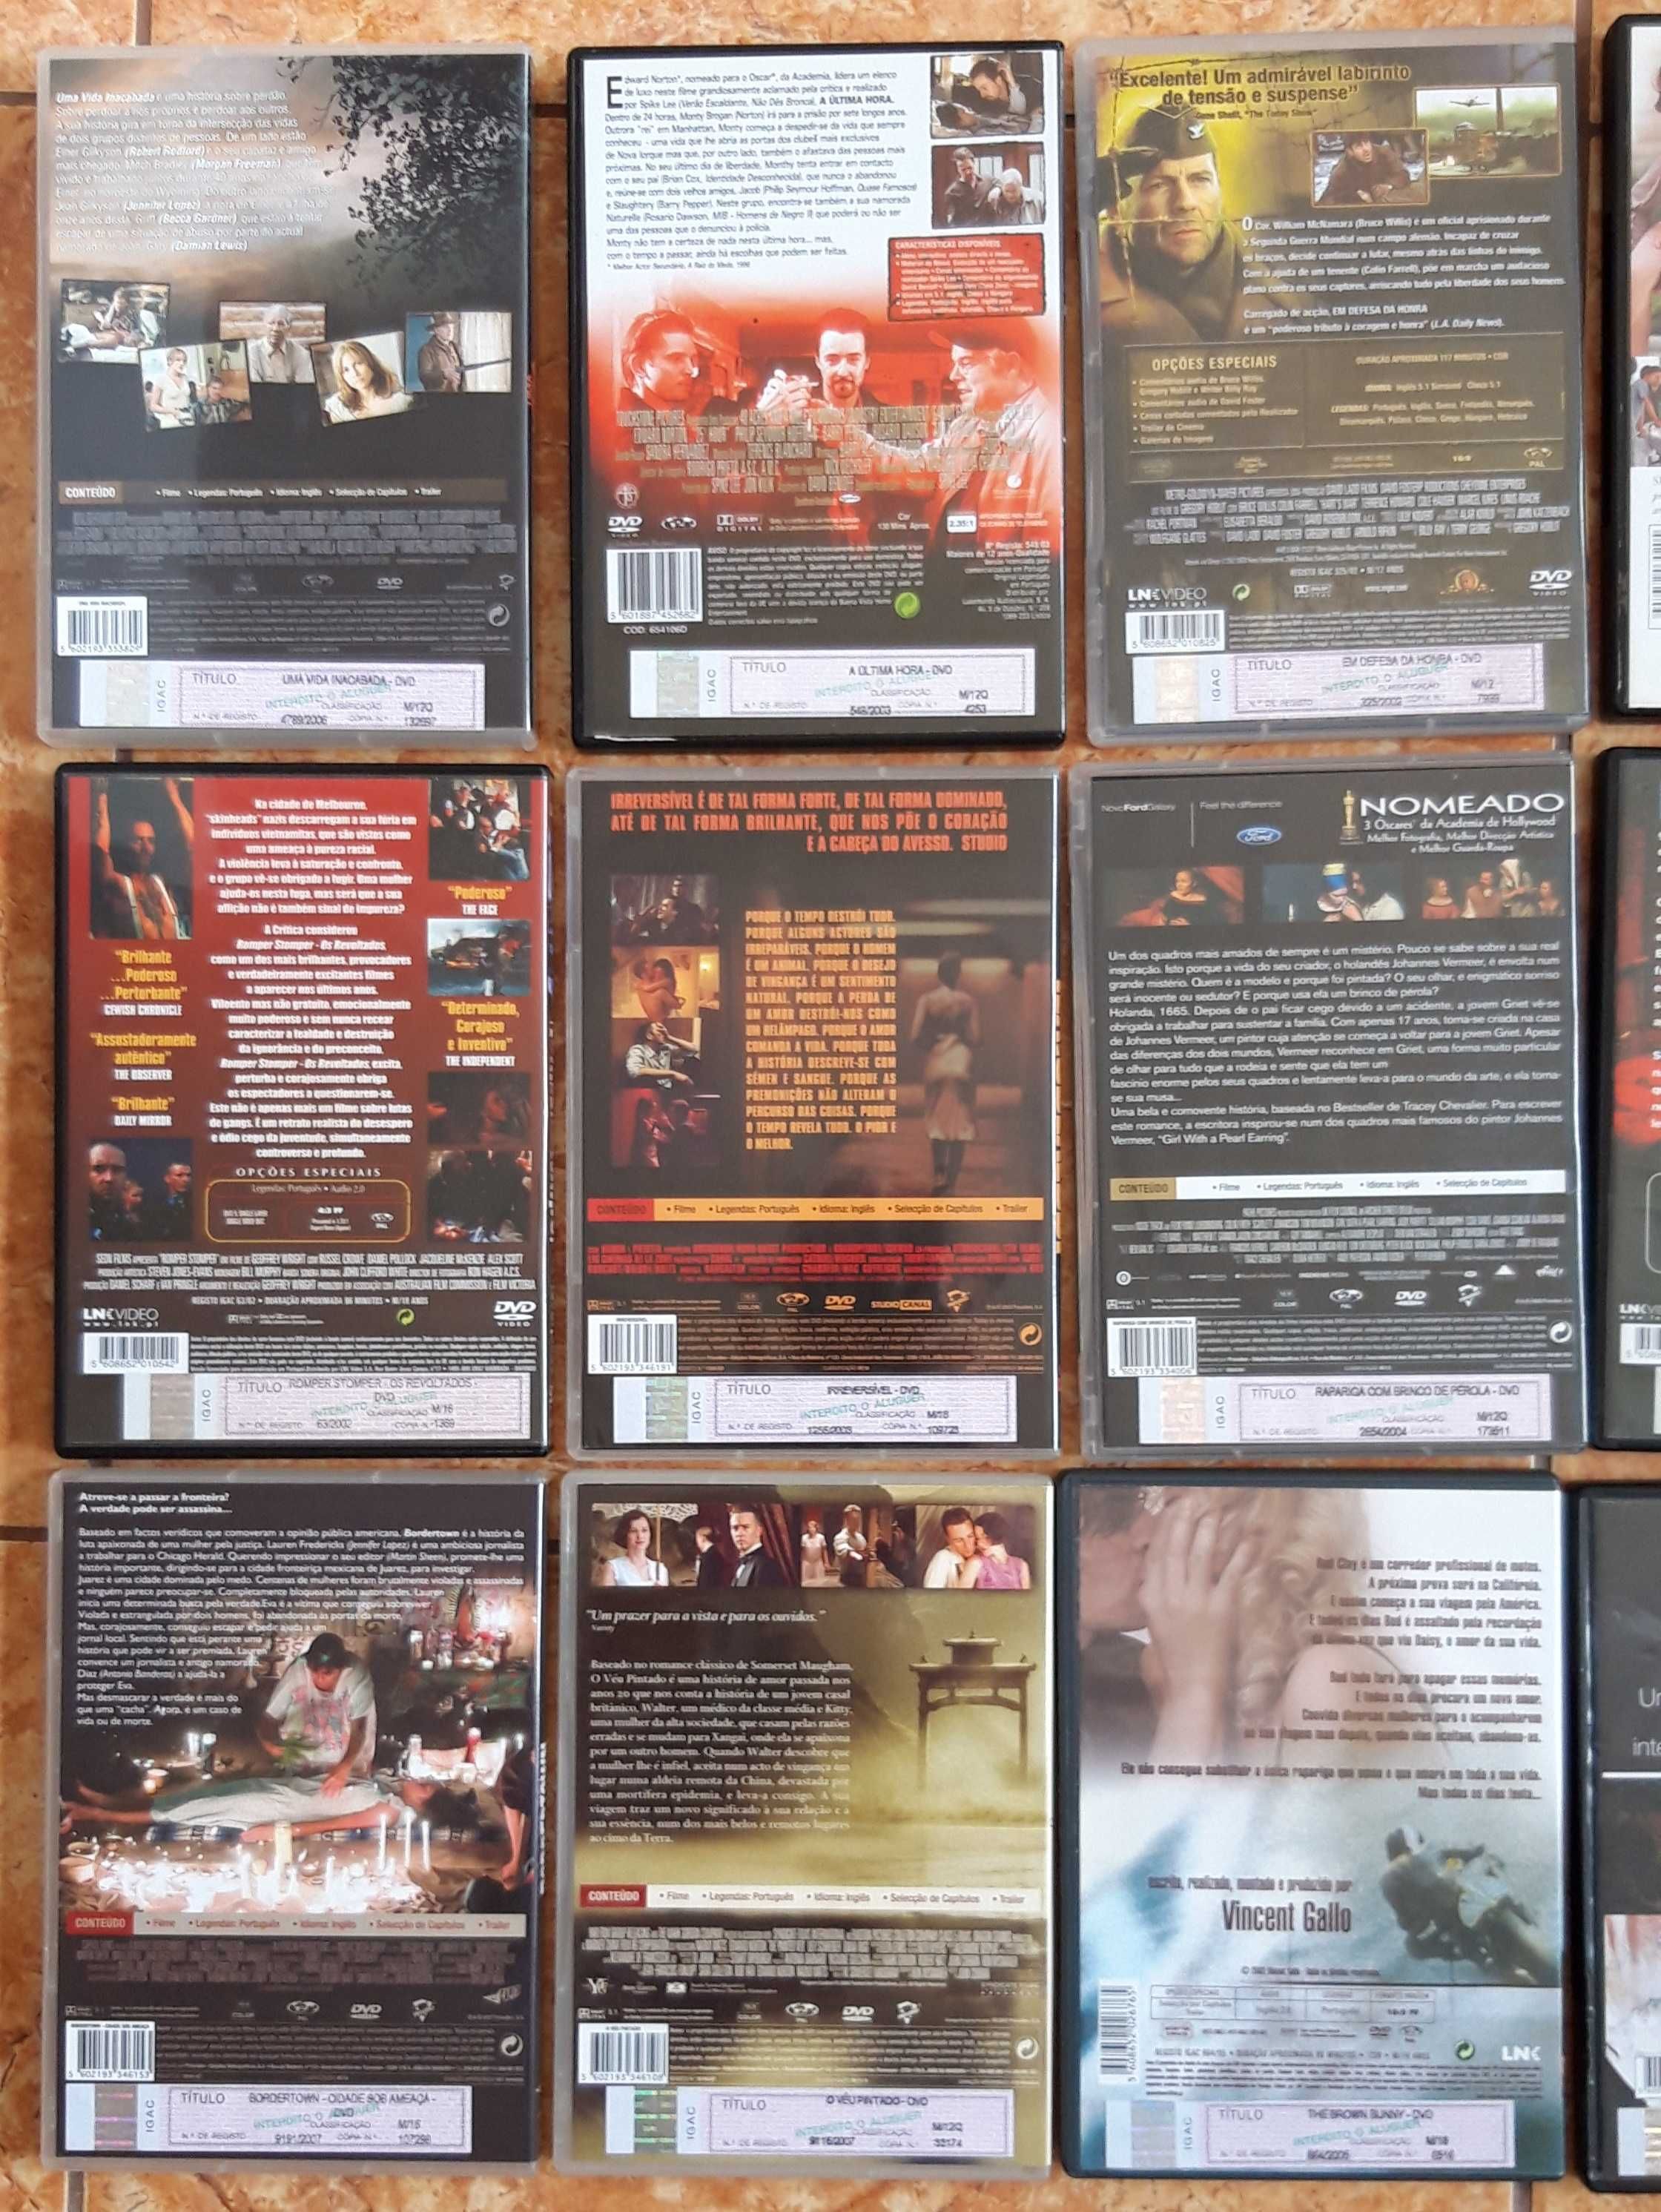 Filmes, Movies de Drama em formato DVD